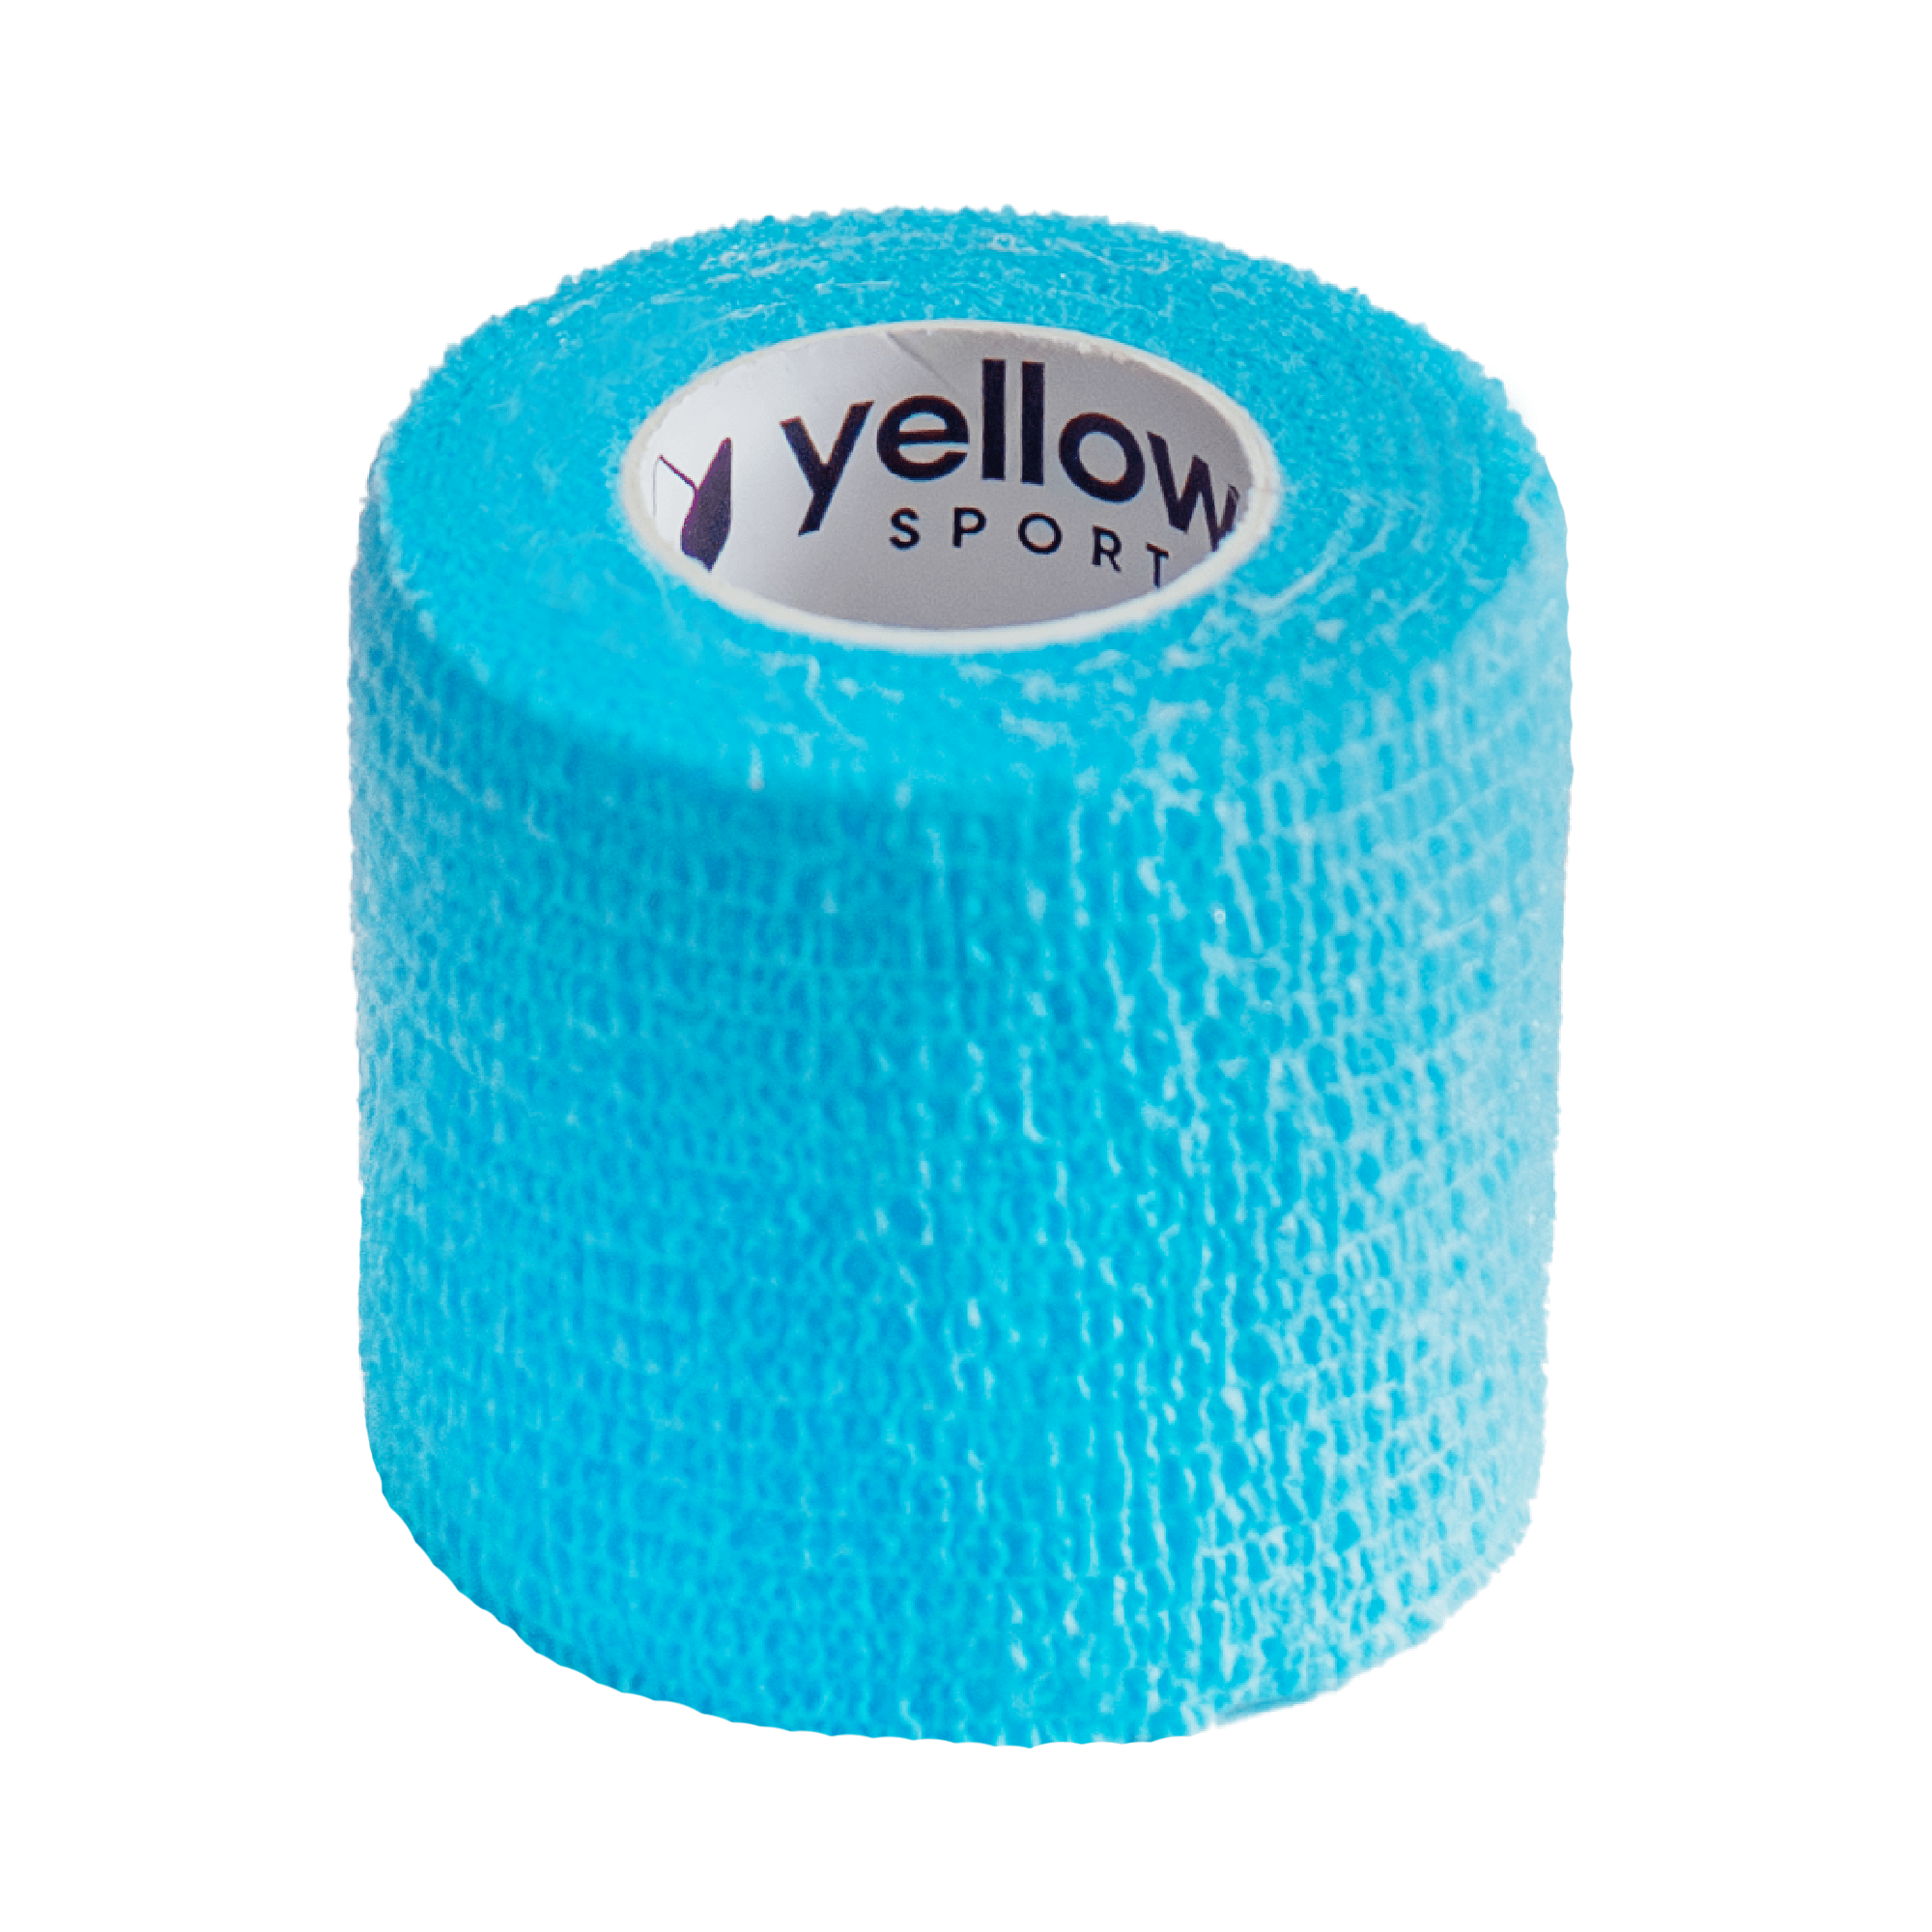 Bandaż kohezyjny yellowBAND  - 5cm x 4,5m, jasnoniebieski 